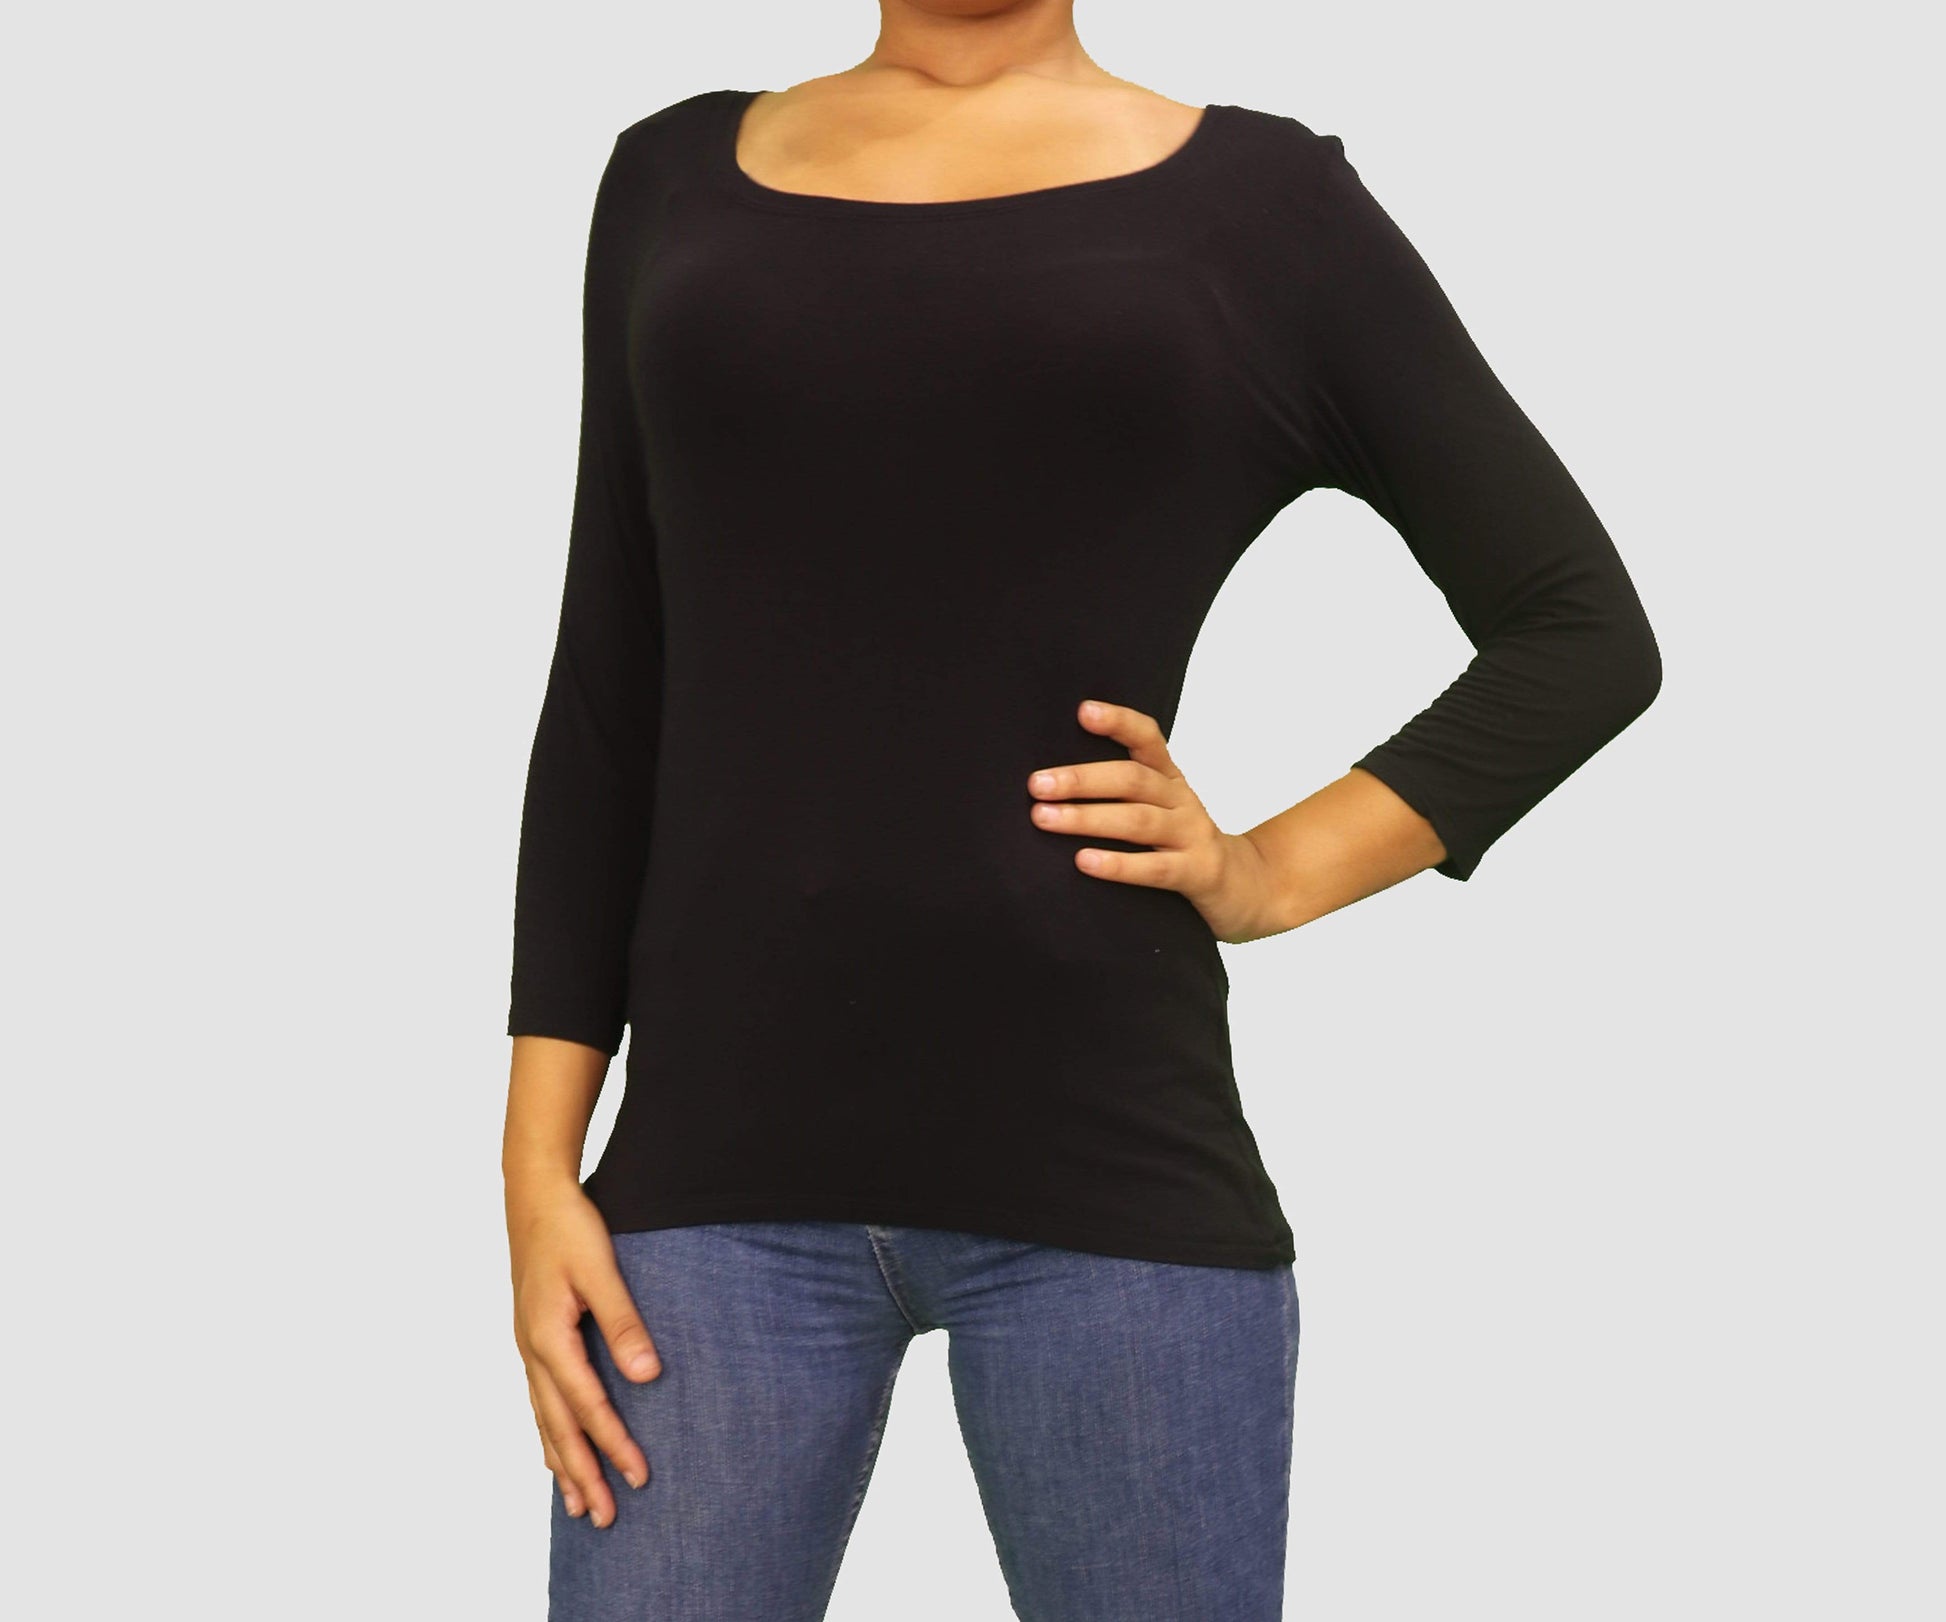 Tahari Womens Tops Medium / Black Long Sleeve Top